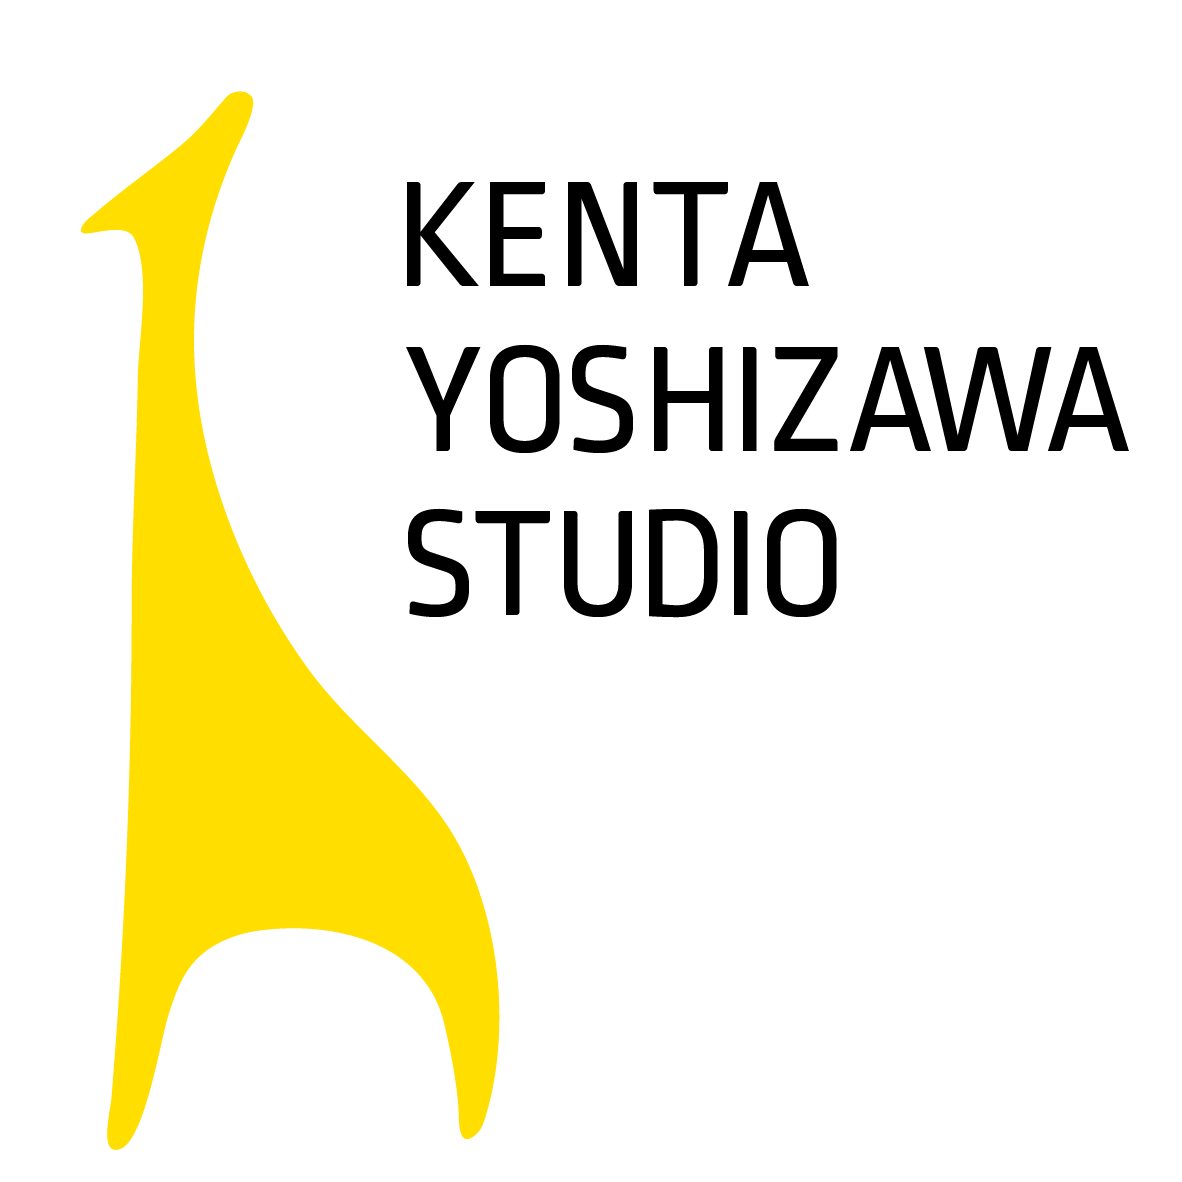 KENTA YOSHIZAWA STUDIO